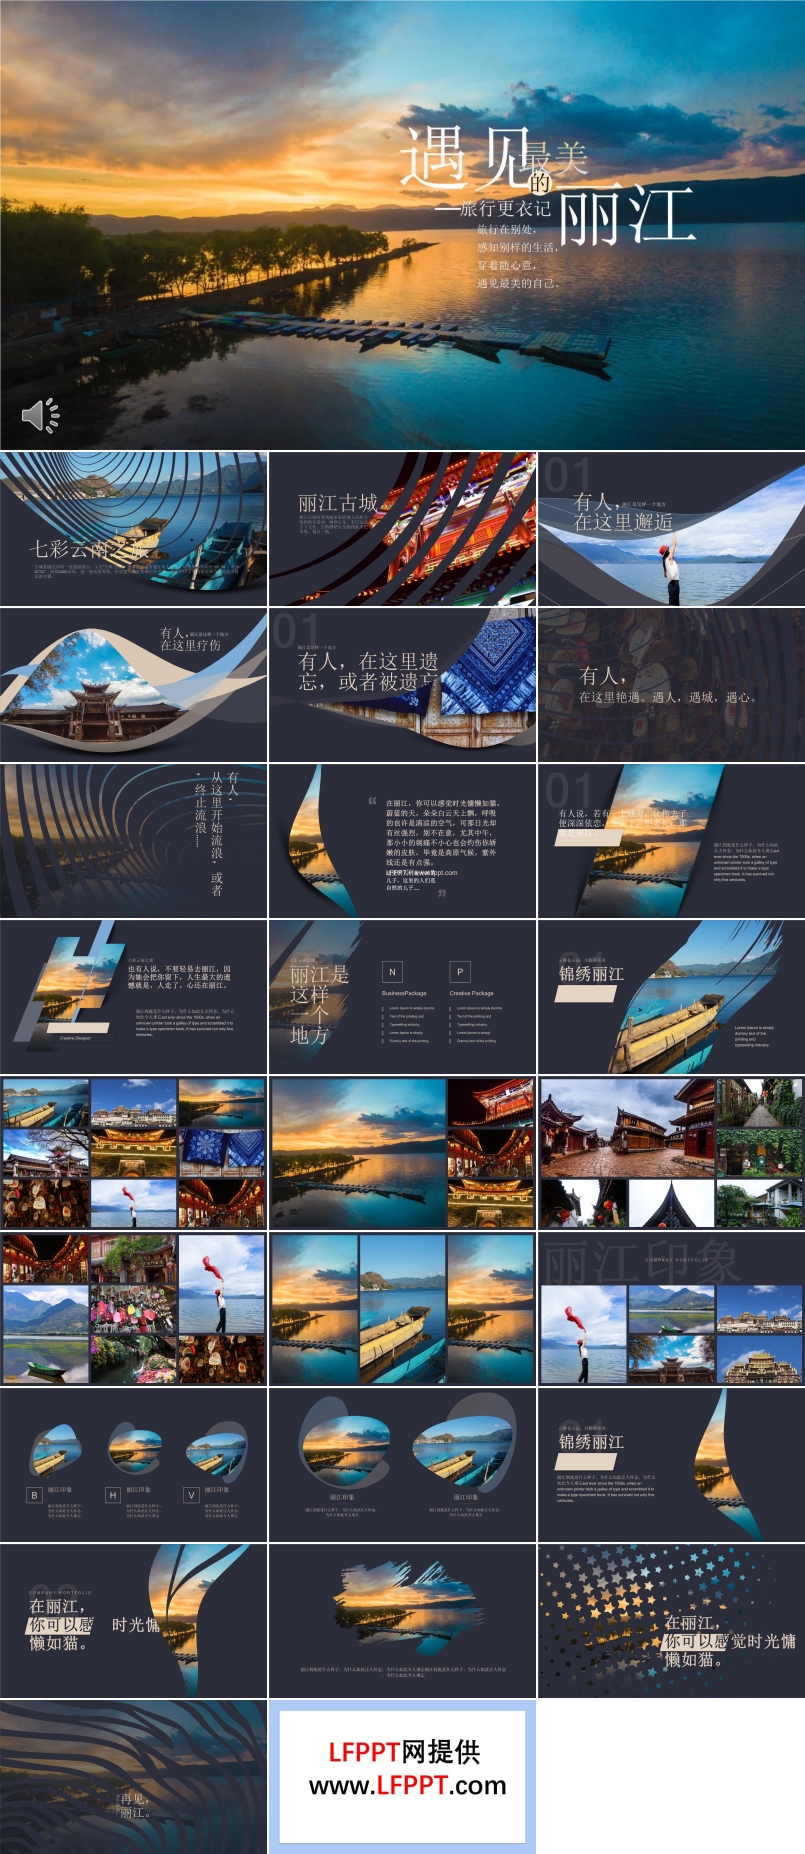 遇见自己遇见最美丽的丽江旅游旅行相册PPT模板